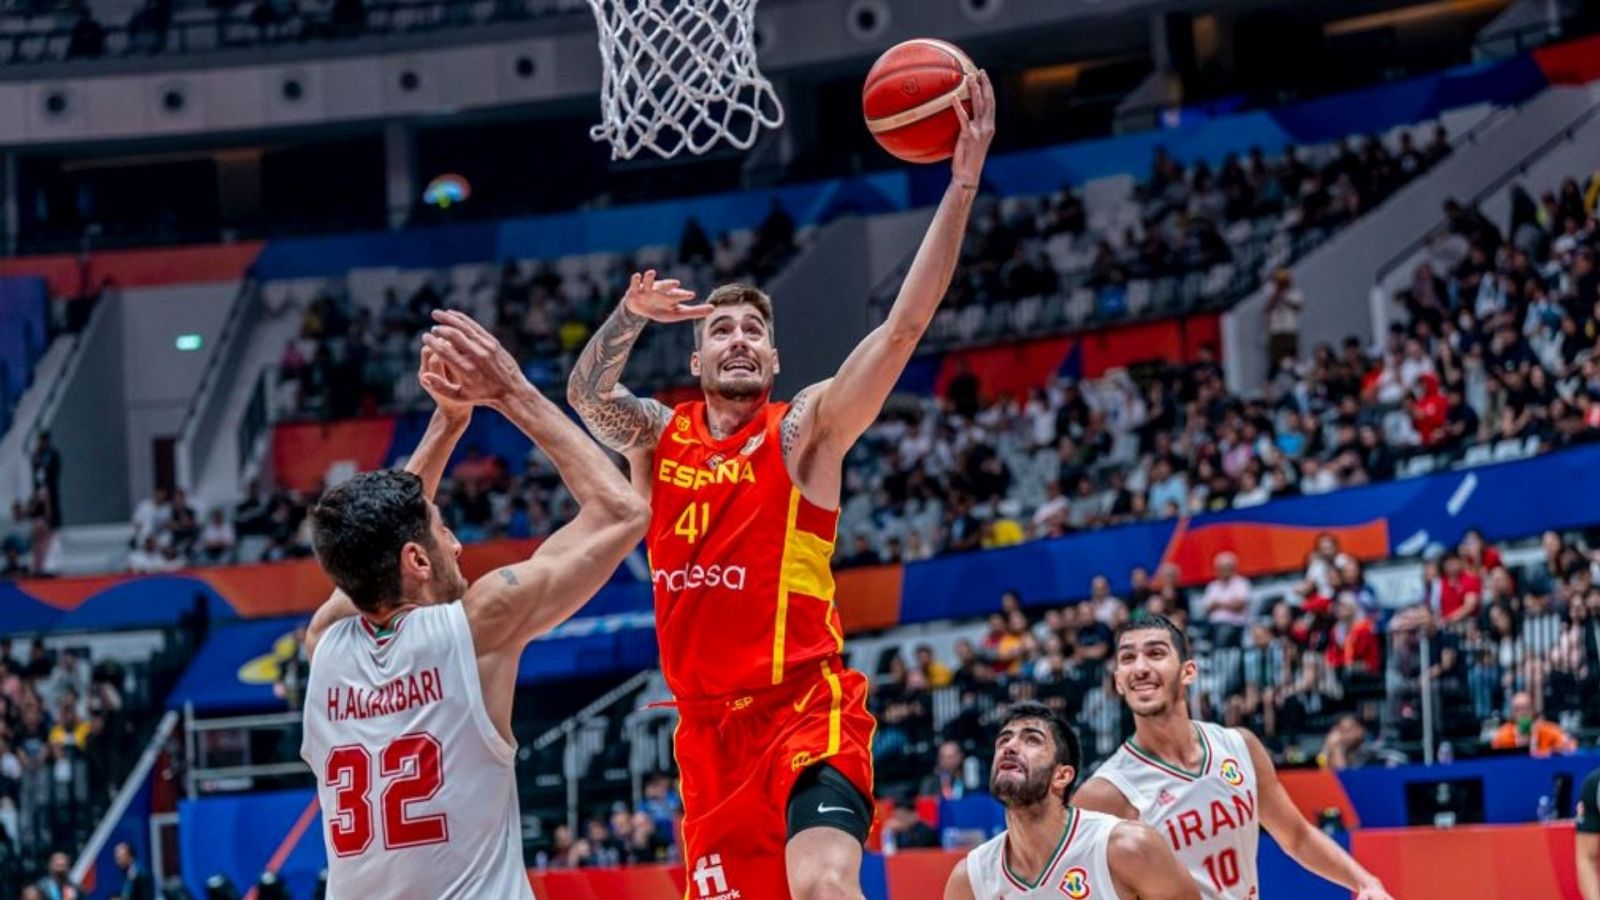 Baloncesto - Copa del Mundo Masculina: Irán - España